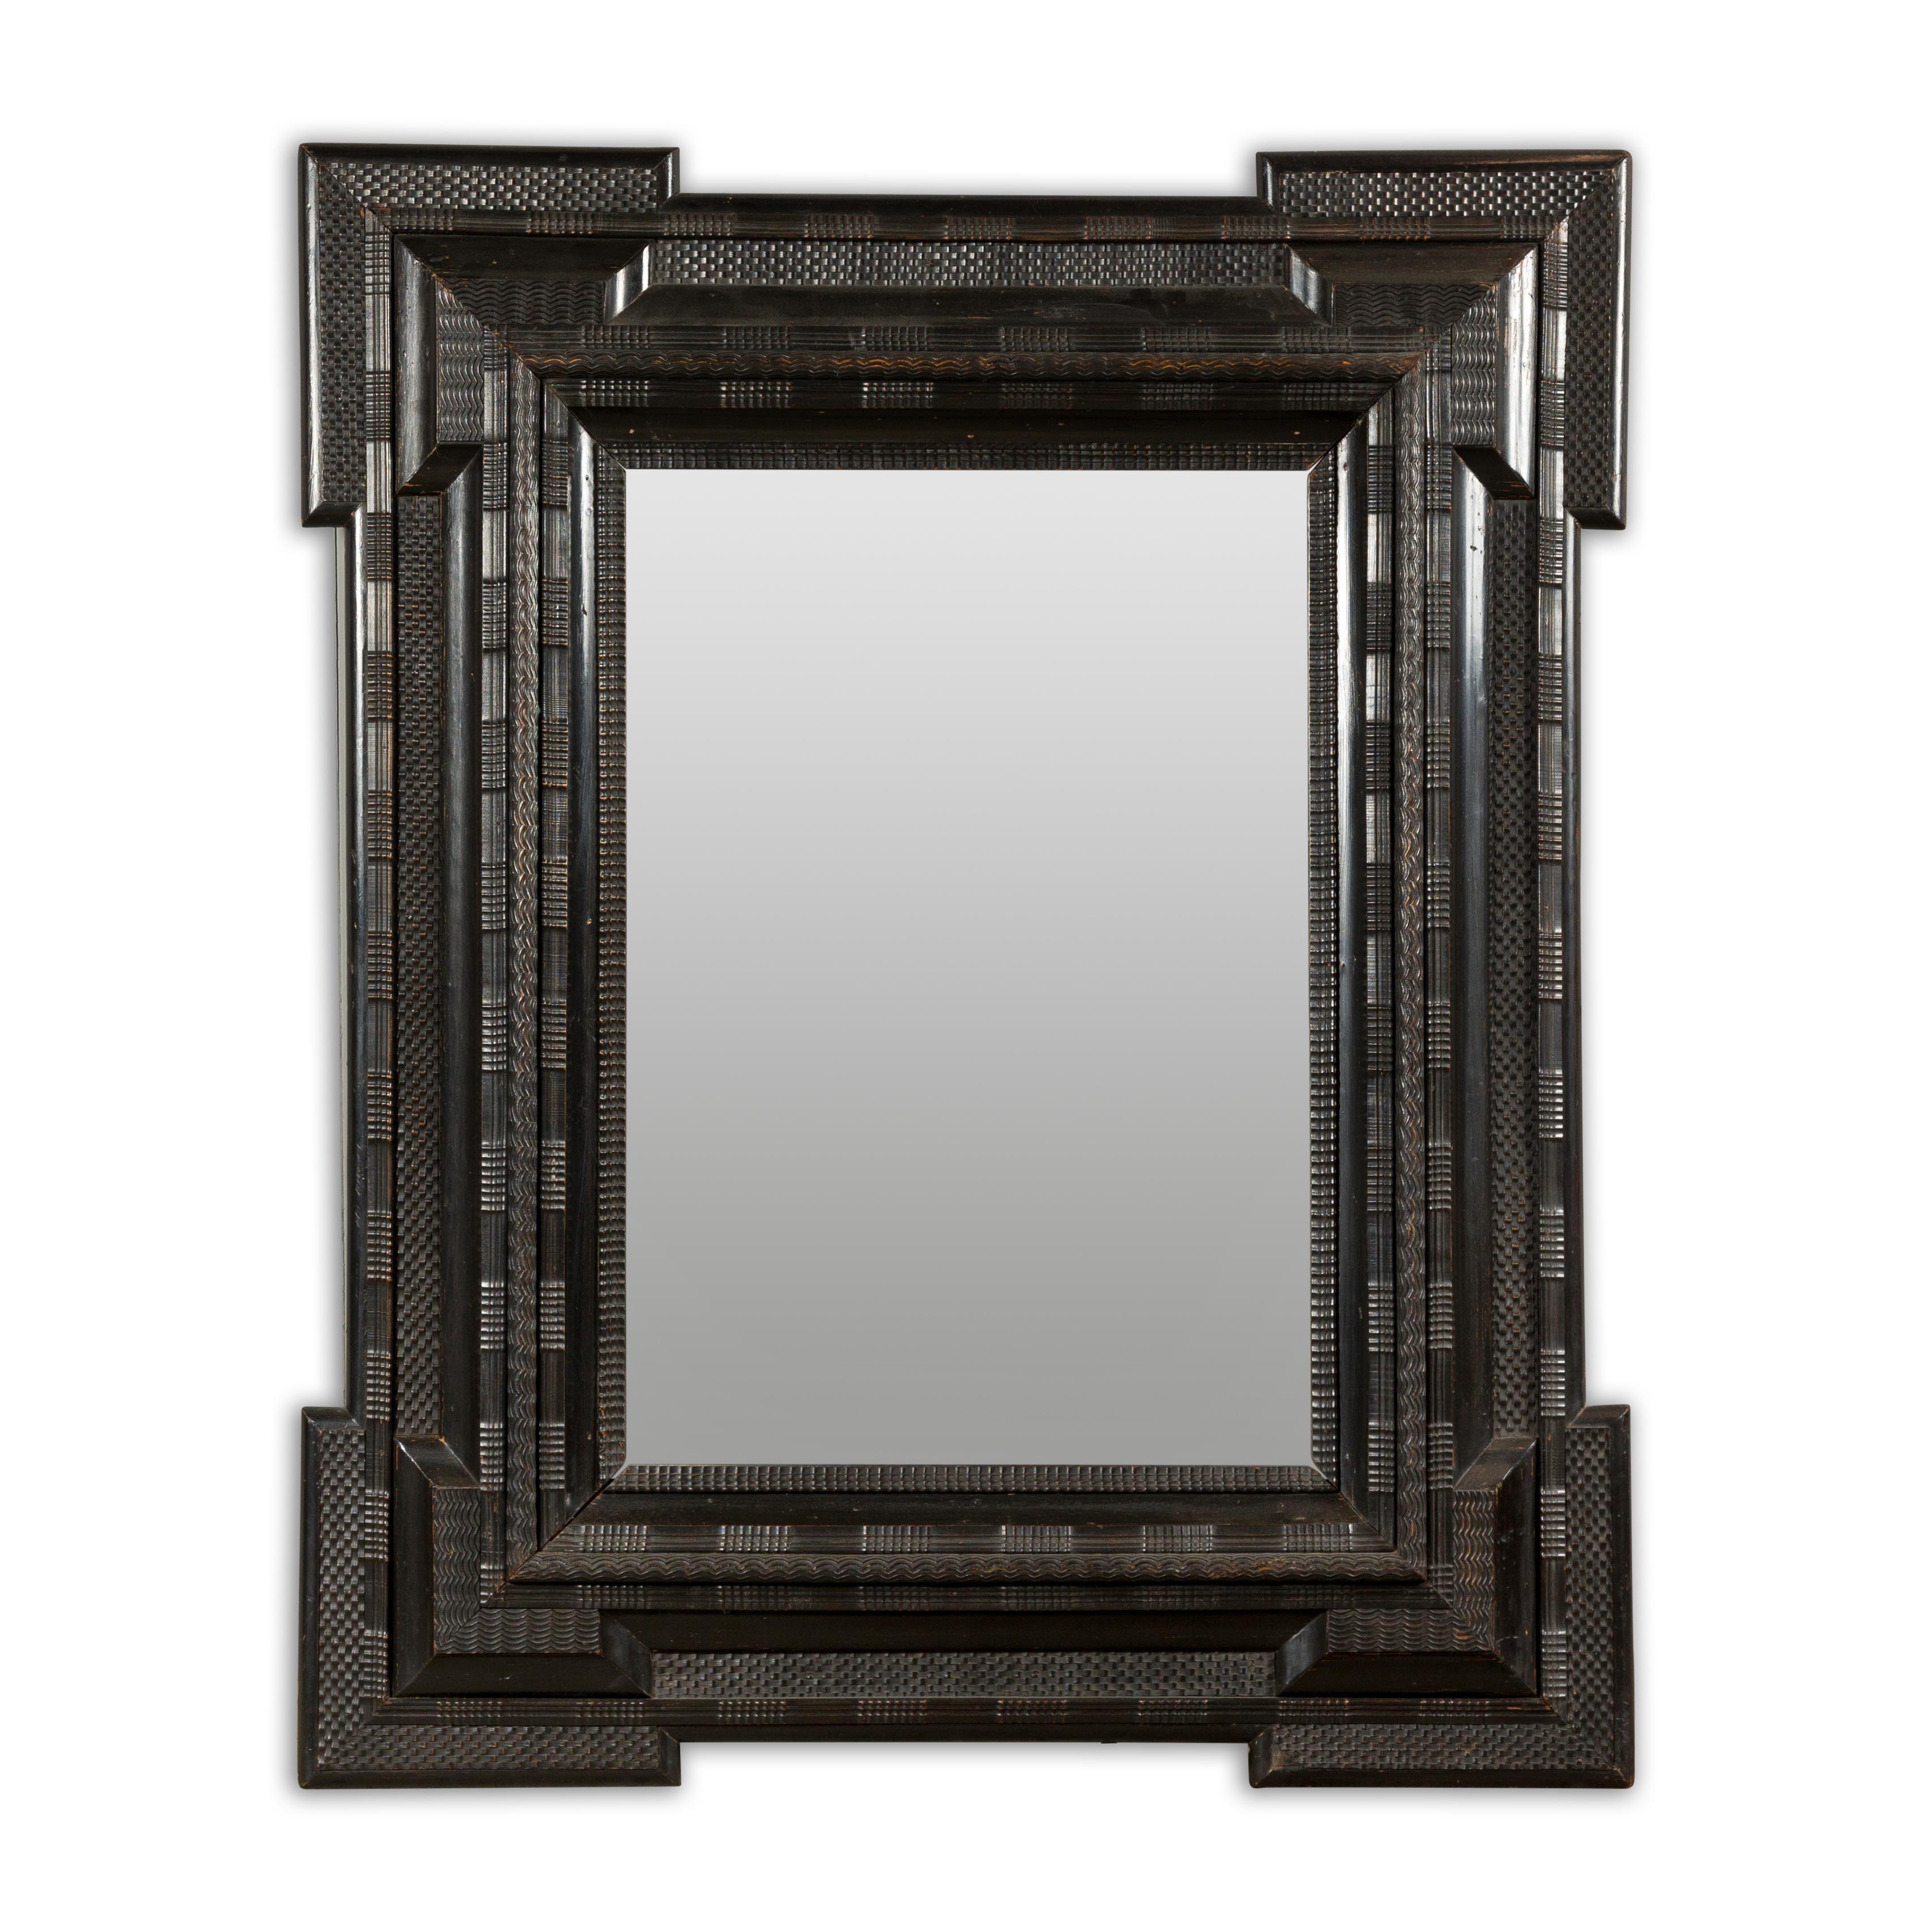 Grand miroir mural hollandais brun foncé/noir du XVIIIe siècle avec cadre sculpté, angles saillants et décor géométrique. Élevez votre espace avec l'élégance intemporelle de ce grand miroir mural hollandais brun foncé/noir du XVIIIe siècle. Fabriqué